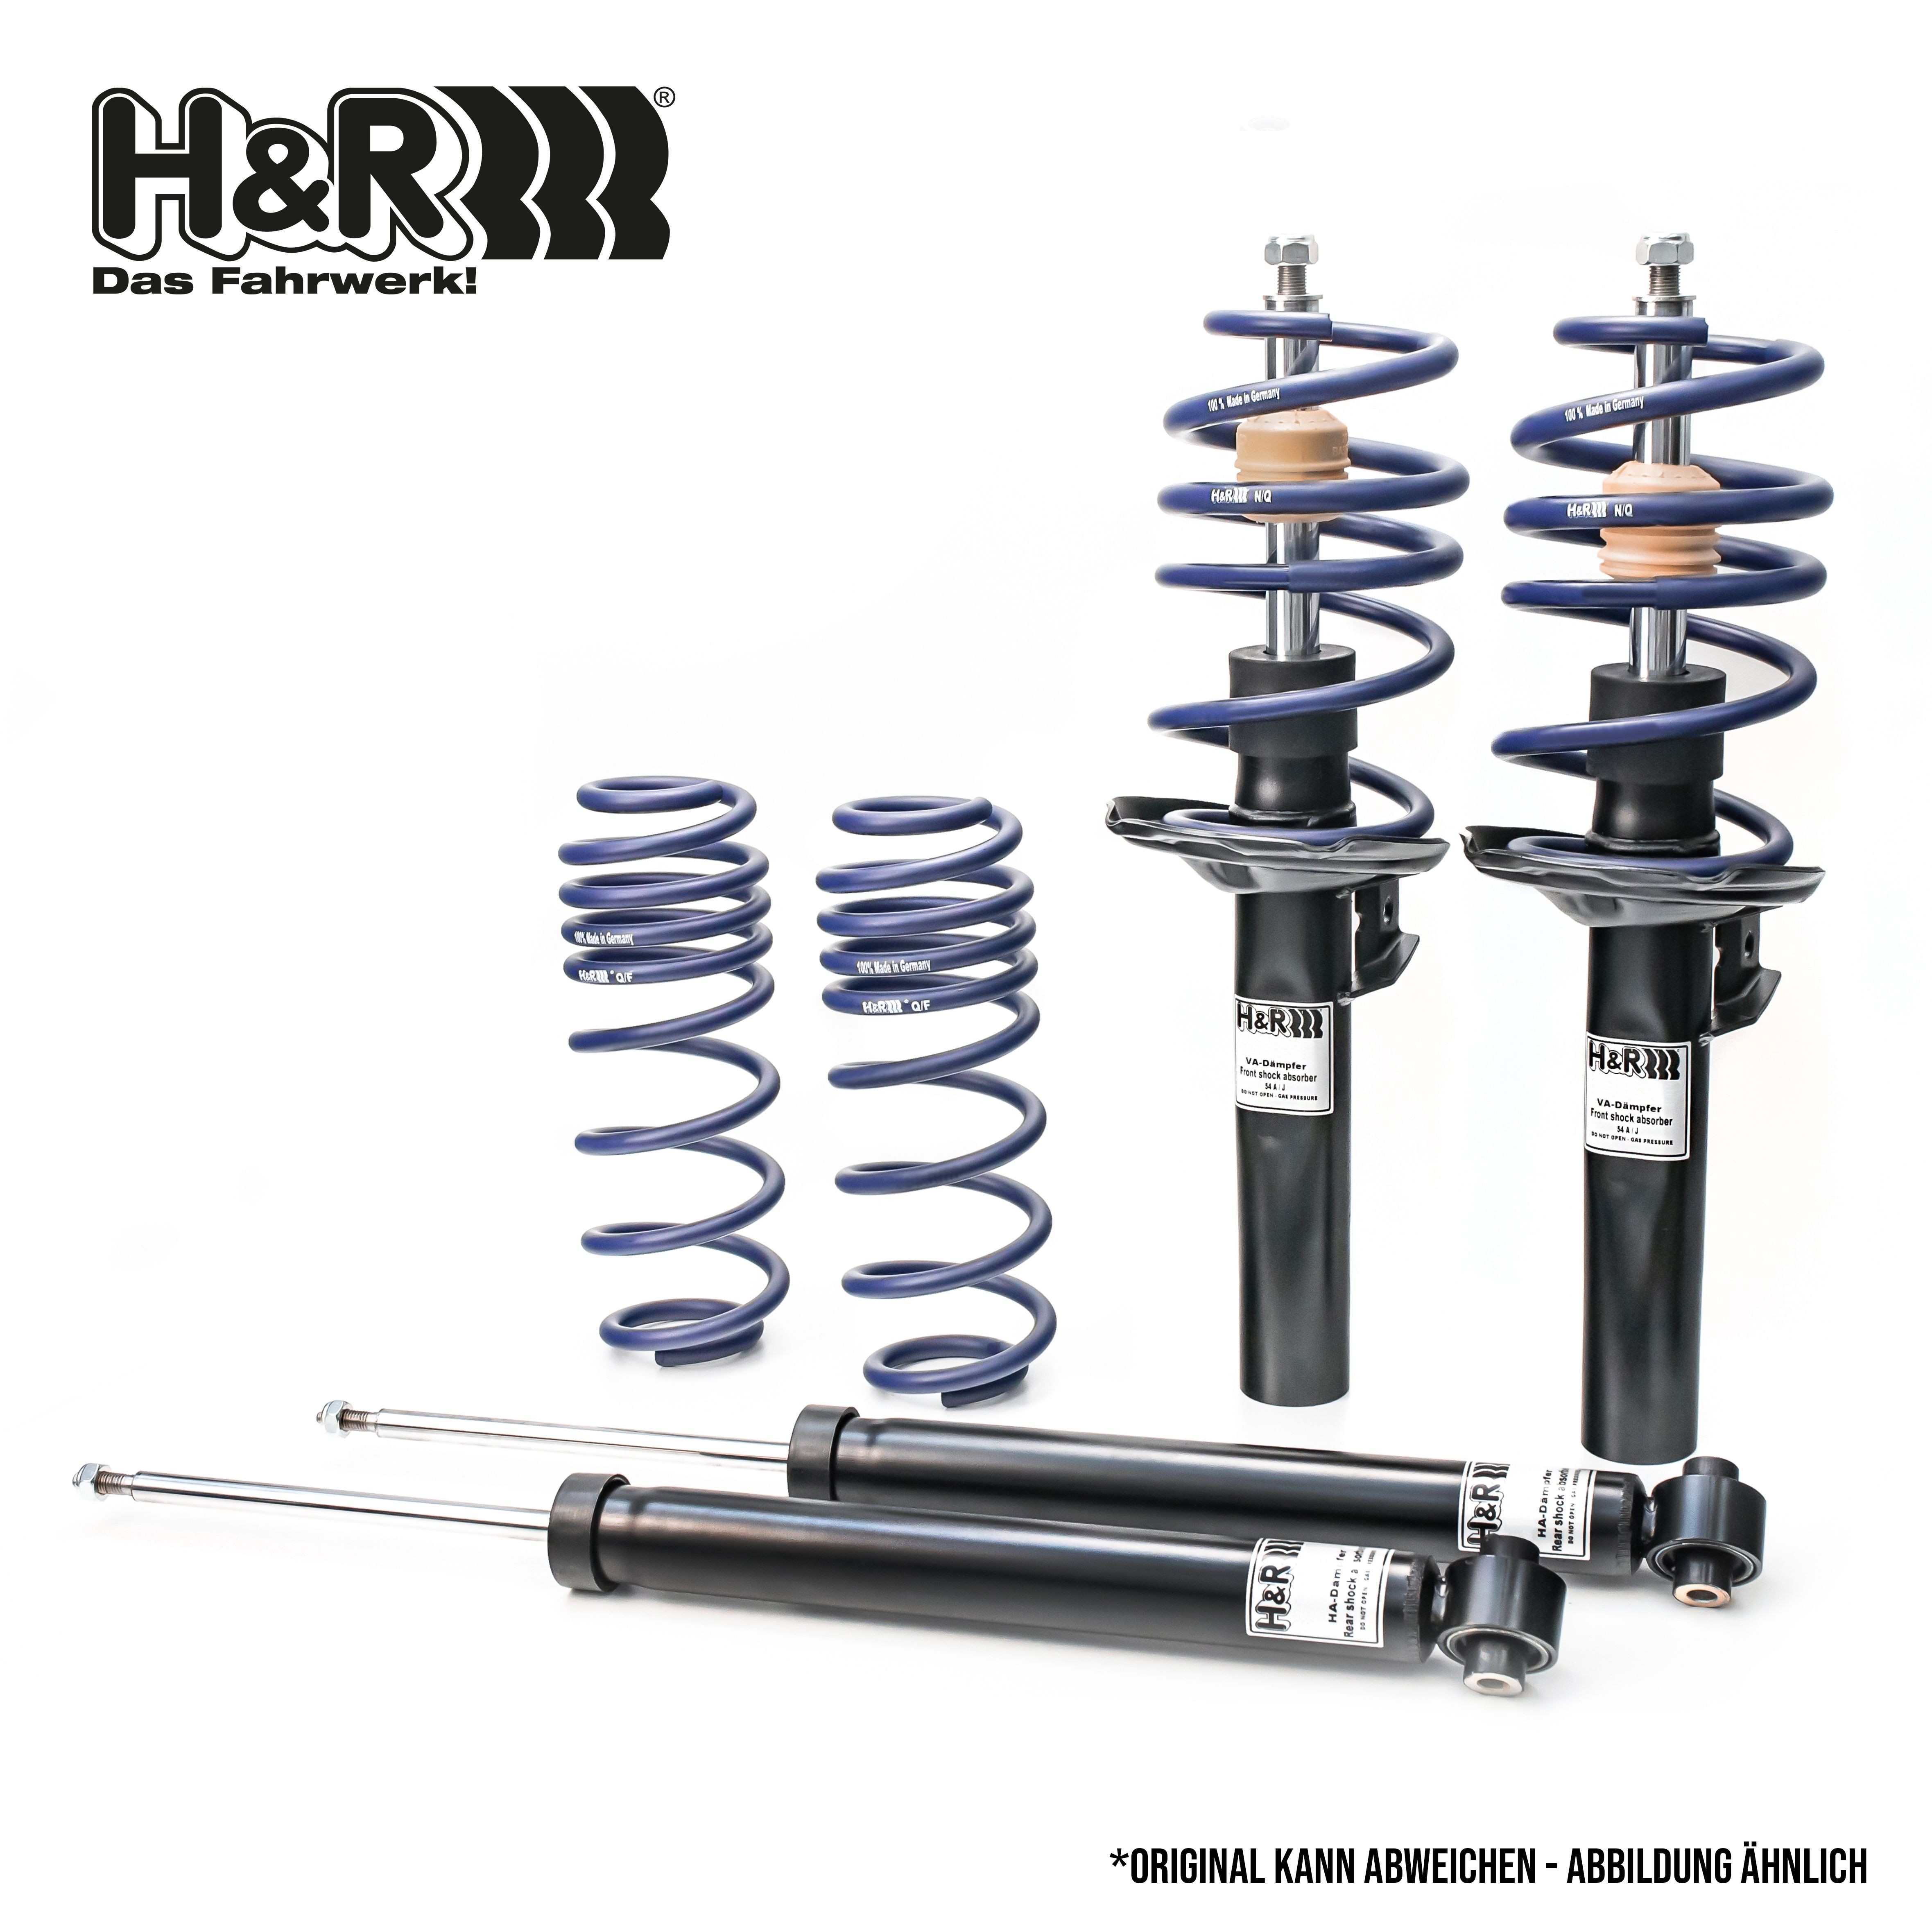 H&R Shock absorber set 31046-1 buy